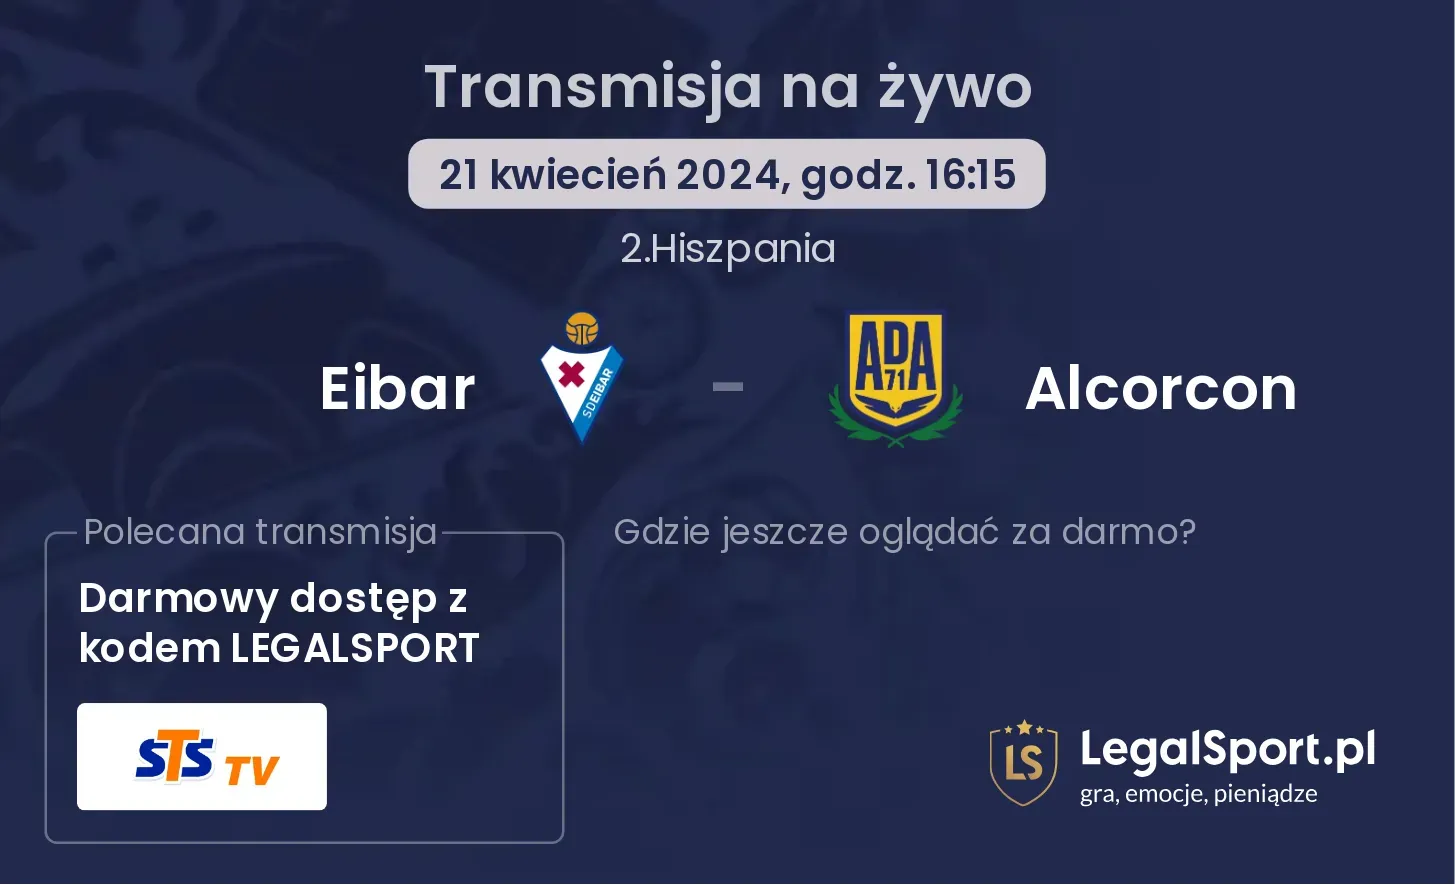 Eibar - Alcorcon transmisja na żywo